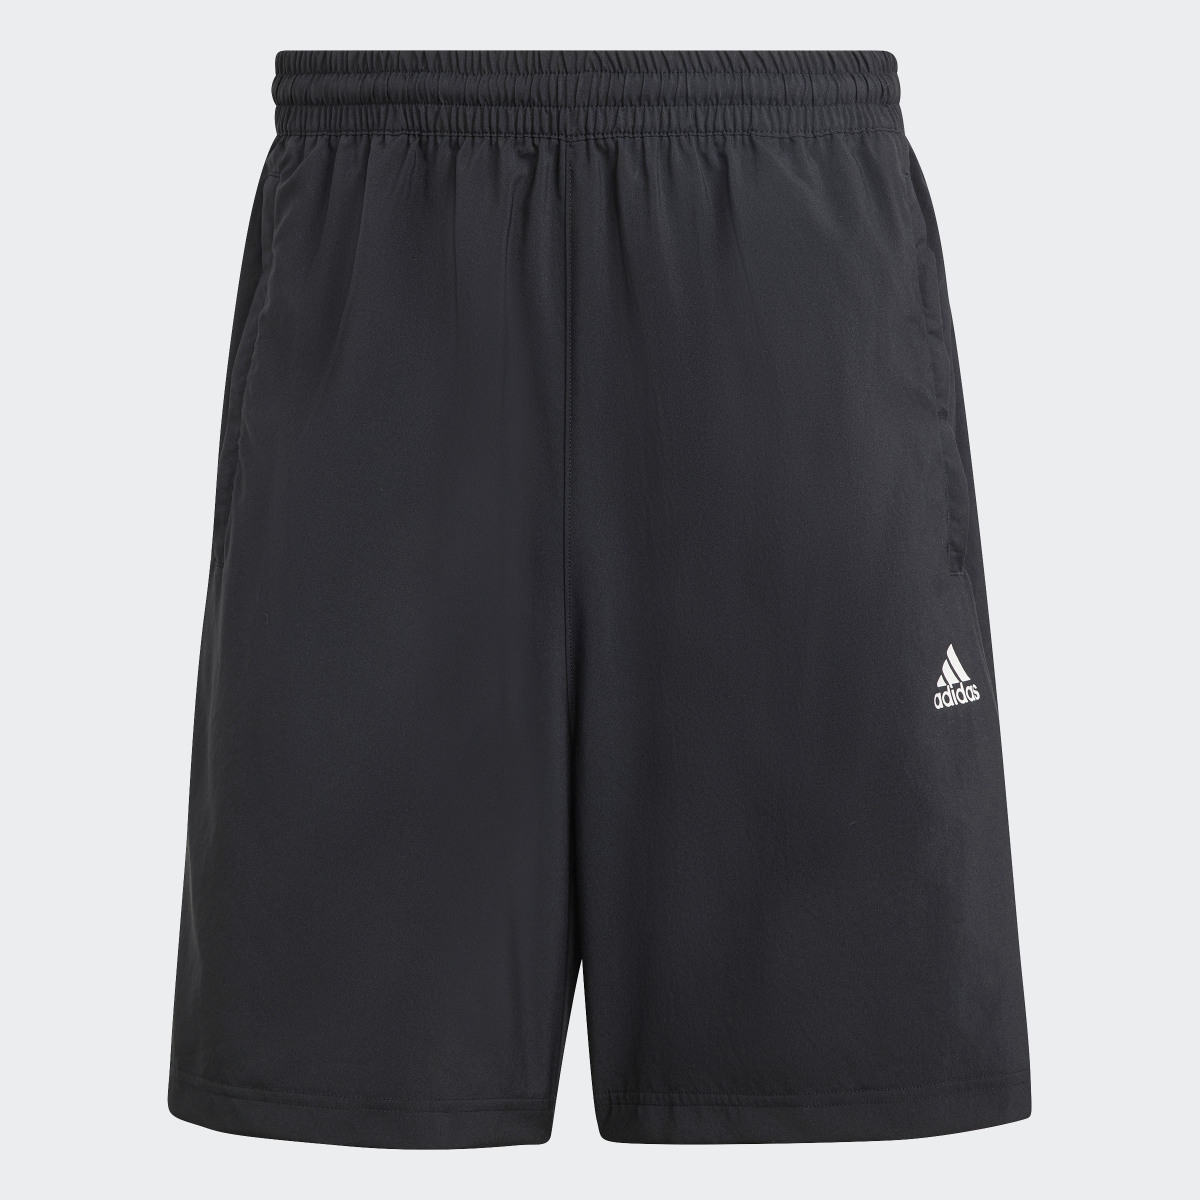 Adidas Scribble Shorts. 4